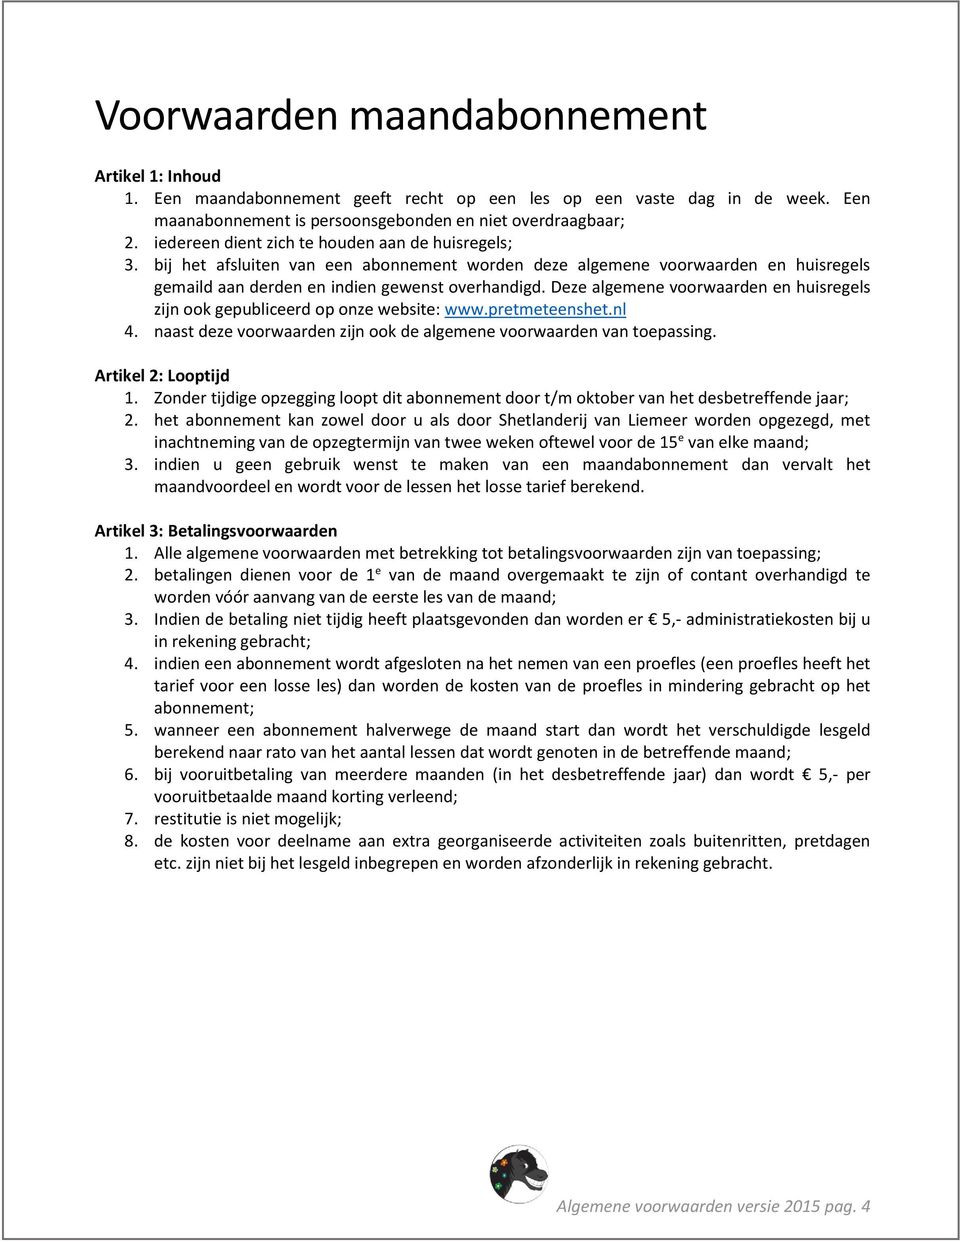 Deze algemene voorwaarden en huisregels zijn ook gepubliceerd op onze website: www.pretmeteenshet.nl 4. naast deze voorwaarden zijn ook de algemene voorwaarden van toepassing. Artikel 2: Looptijd 1.